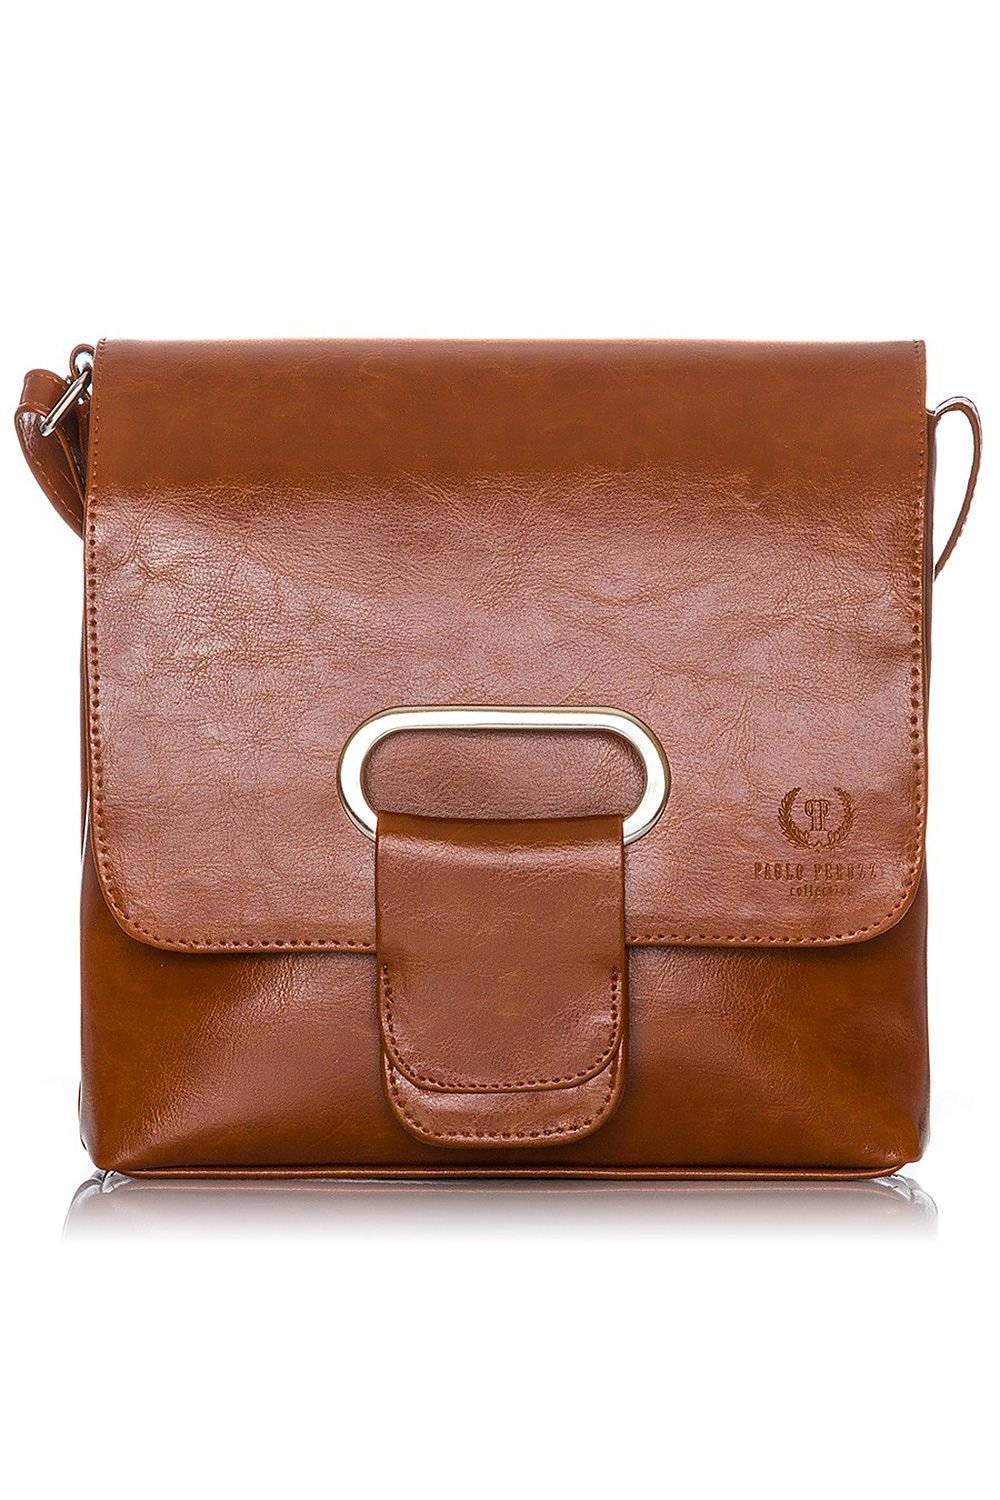 Natural leather bag model 173189 Galanter